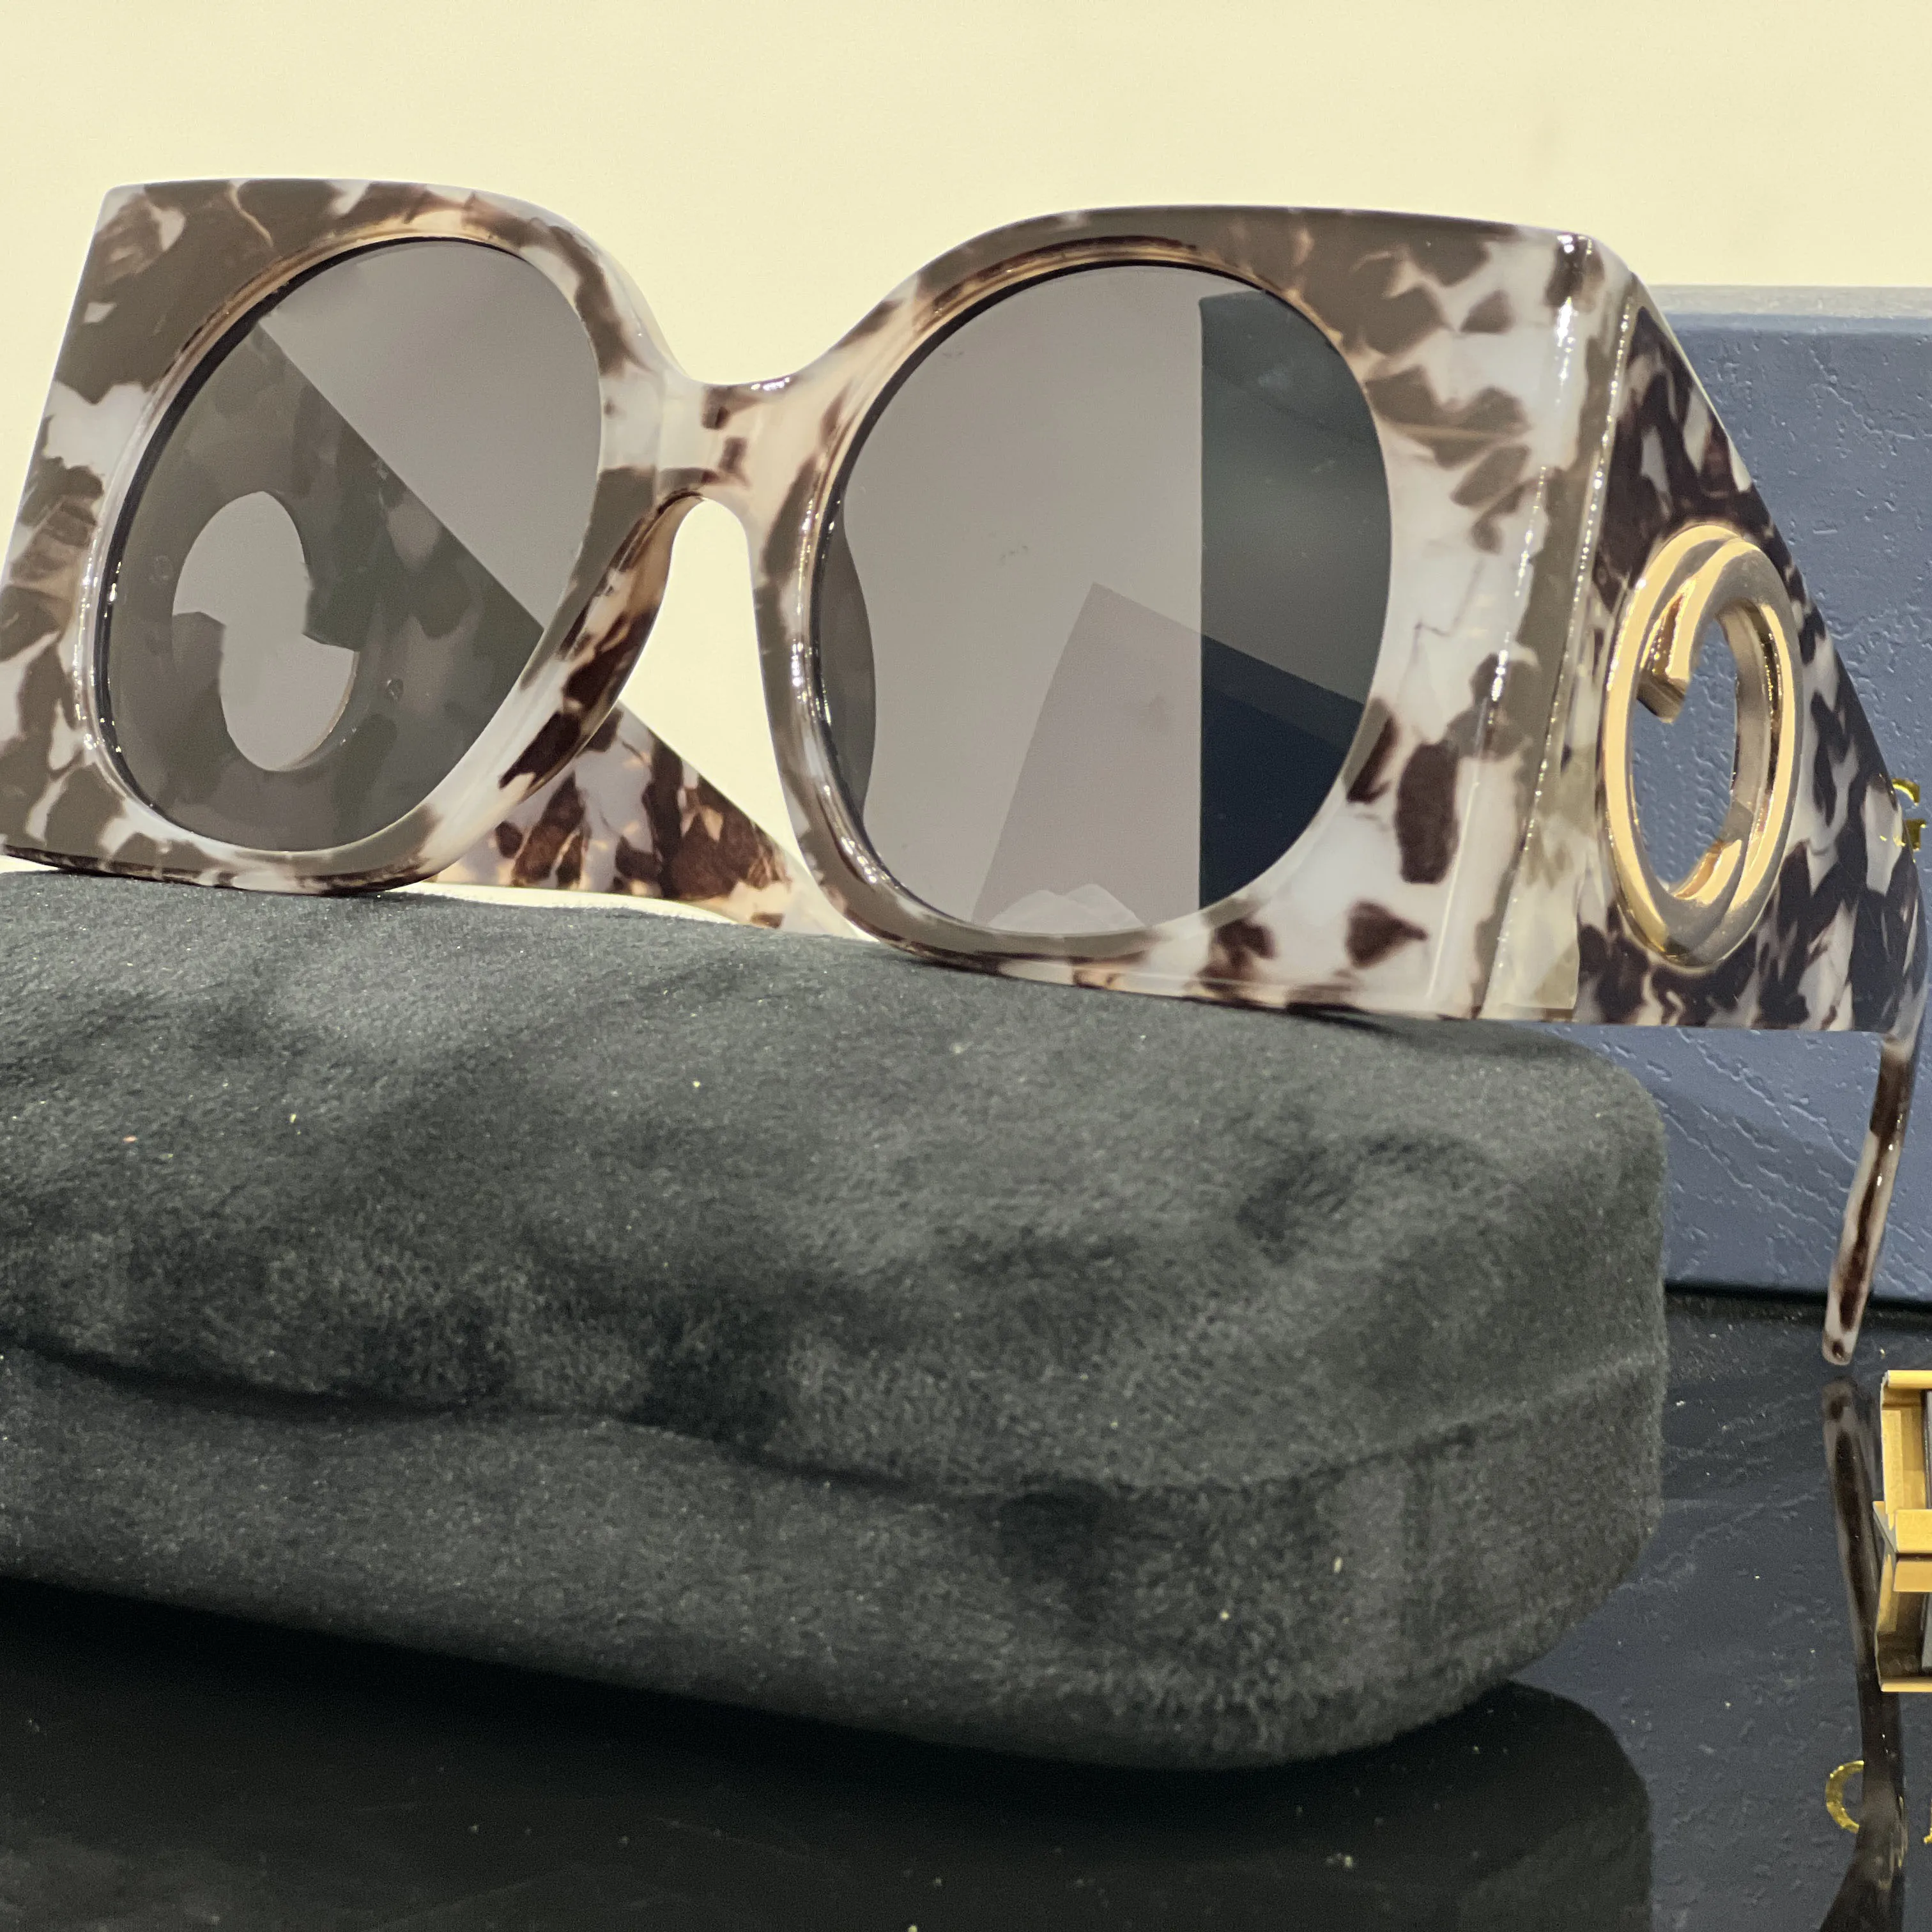 designer sunglasses for women luxury glasses popular letter sunglasses women eyeglasses fashion Metal Sun Glasses good gift